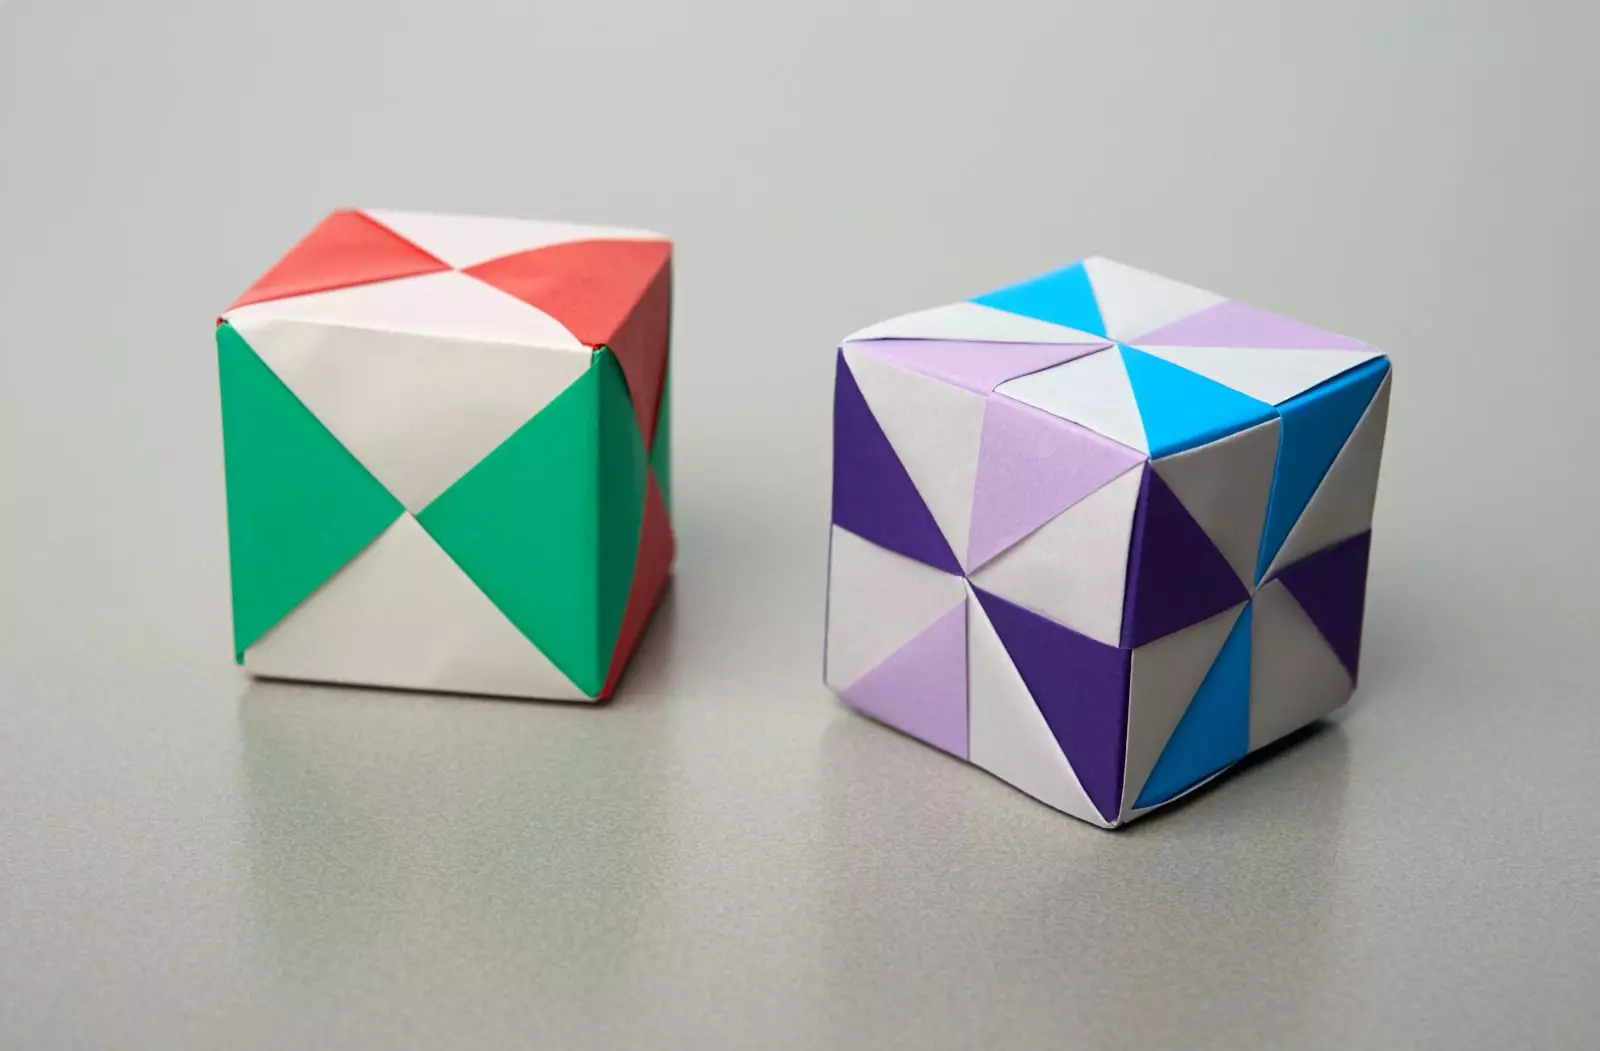 Origami (97 mafoto): Chii icho? Manhamba naKurume 8 yebhuku rekunyorera. Mhando dzeJapan Art Folding mapepa mapepa. Maitiro Ekuita Zvakasiyana Nhamba? 26950_29